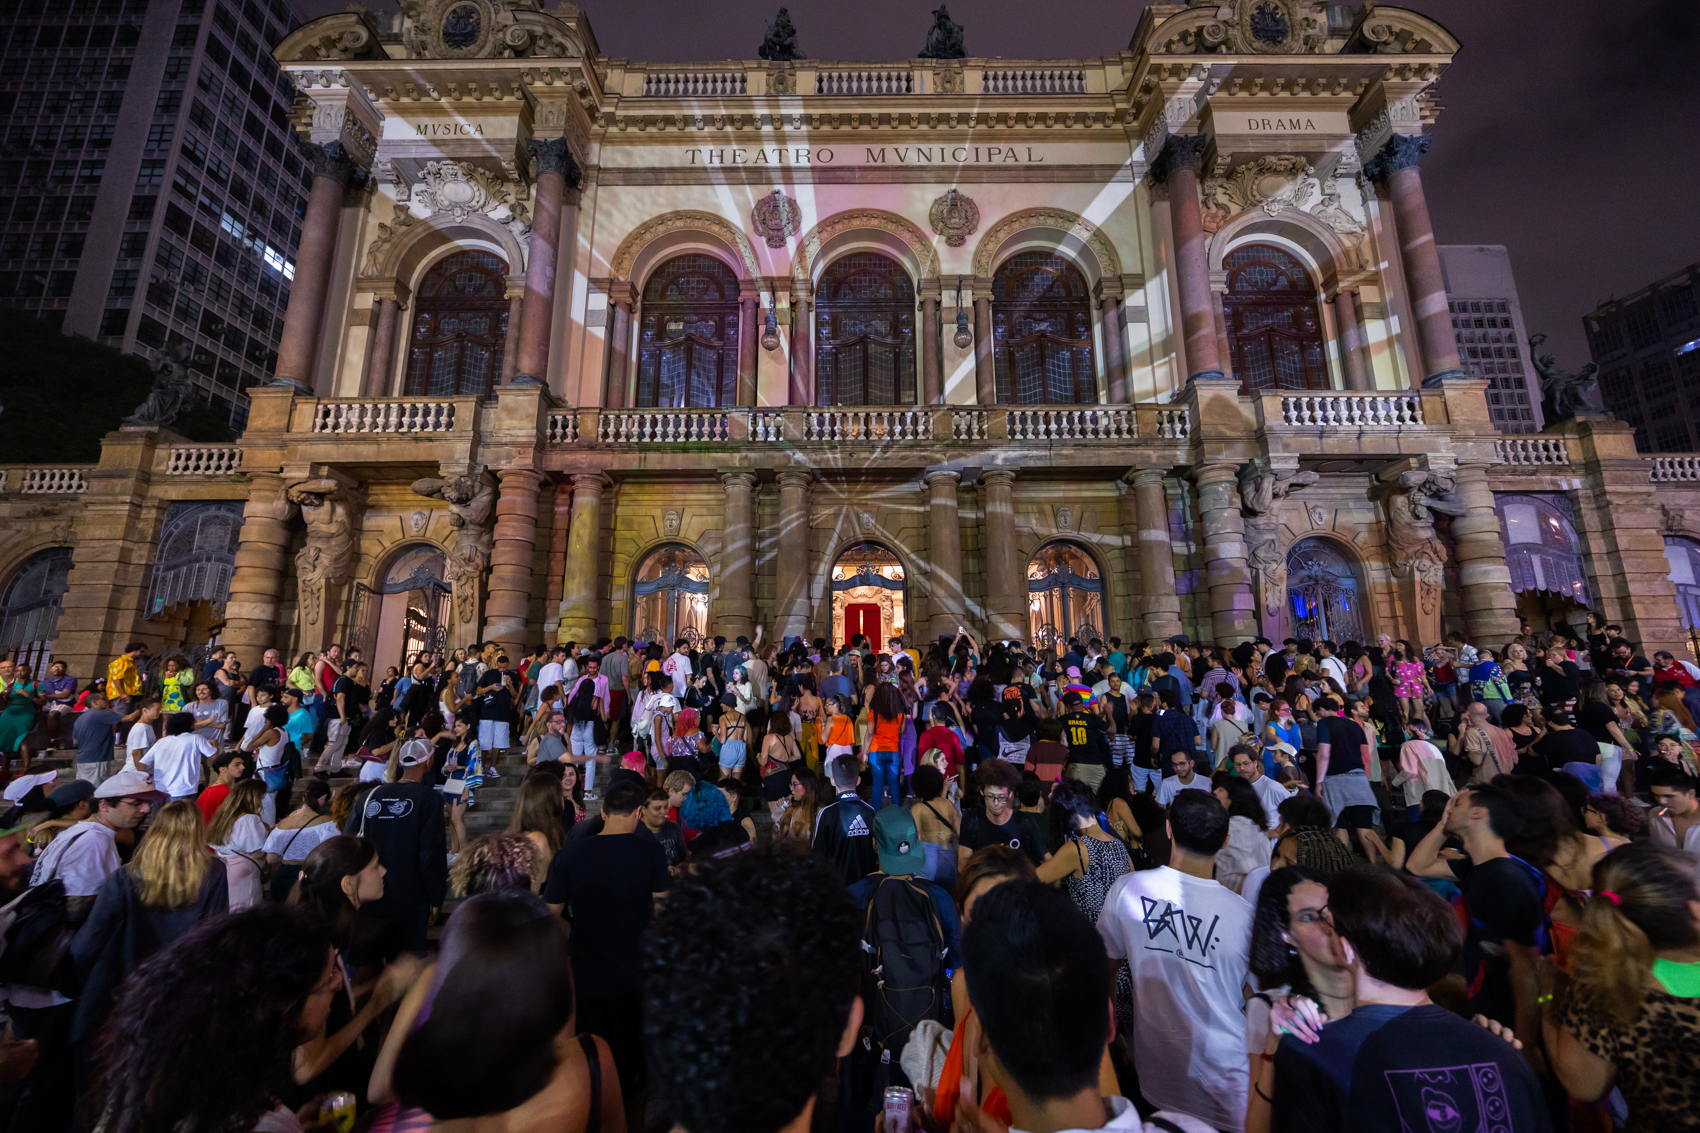 notícia Evento Inovador Reúne Público de Diversas Vertentes Musicais e Projeções de imagem no Theatro Municipal de São Paulo